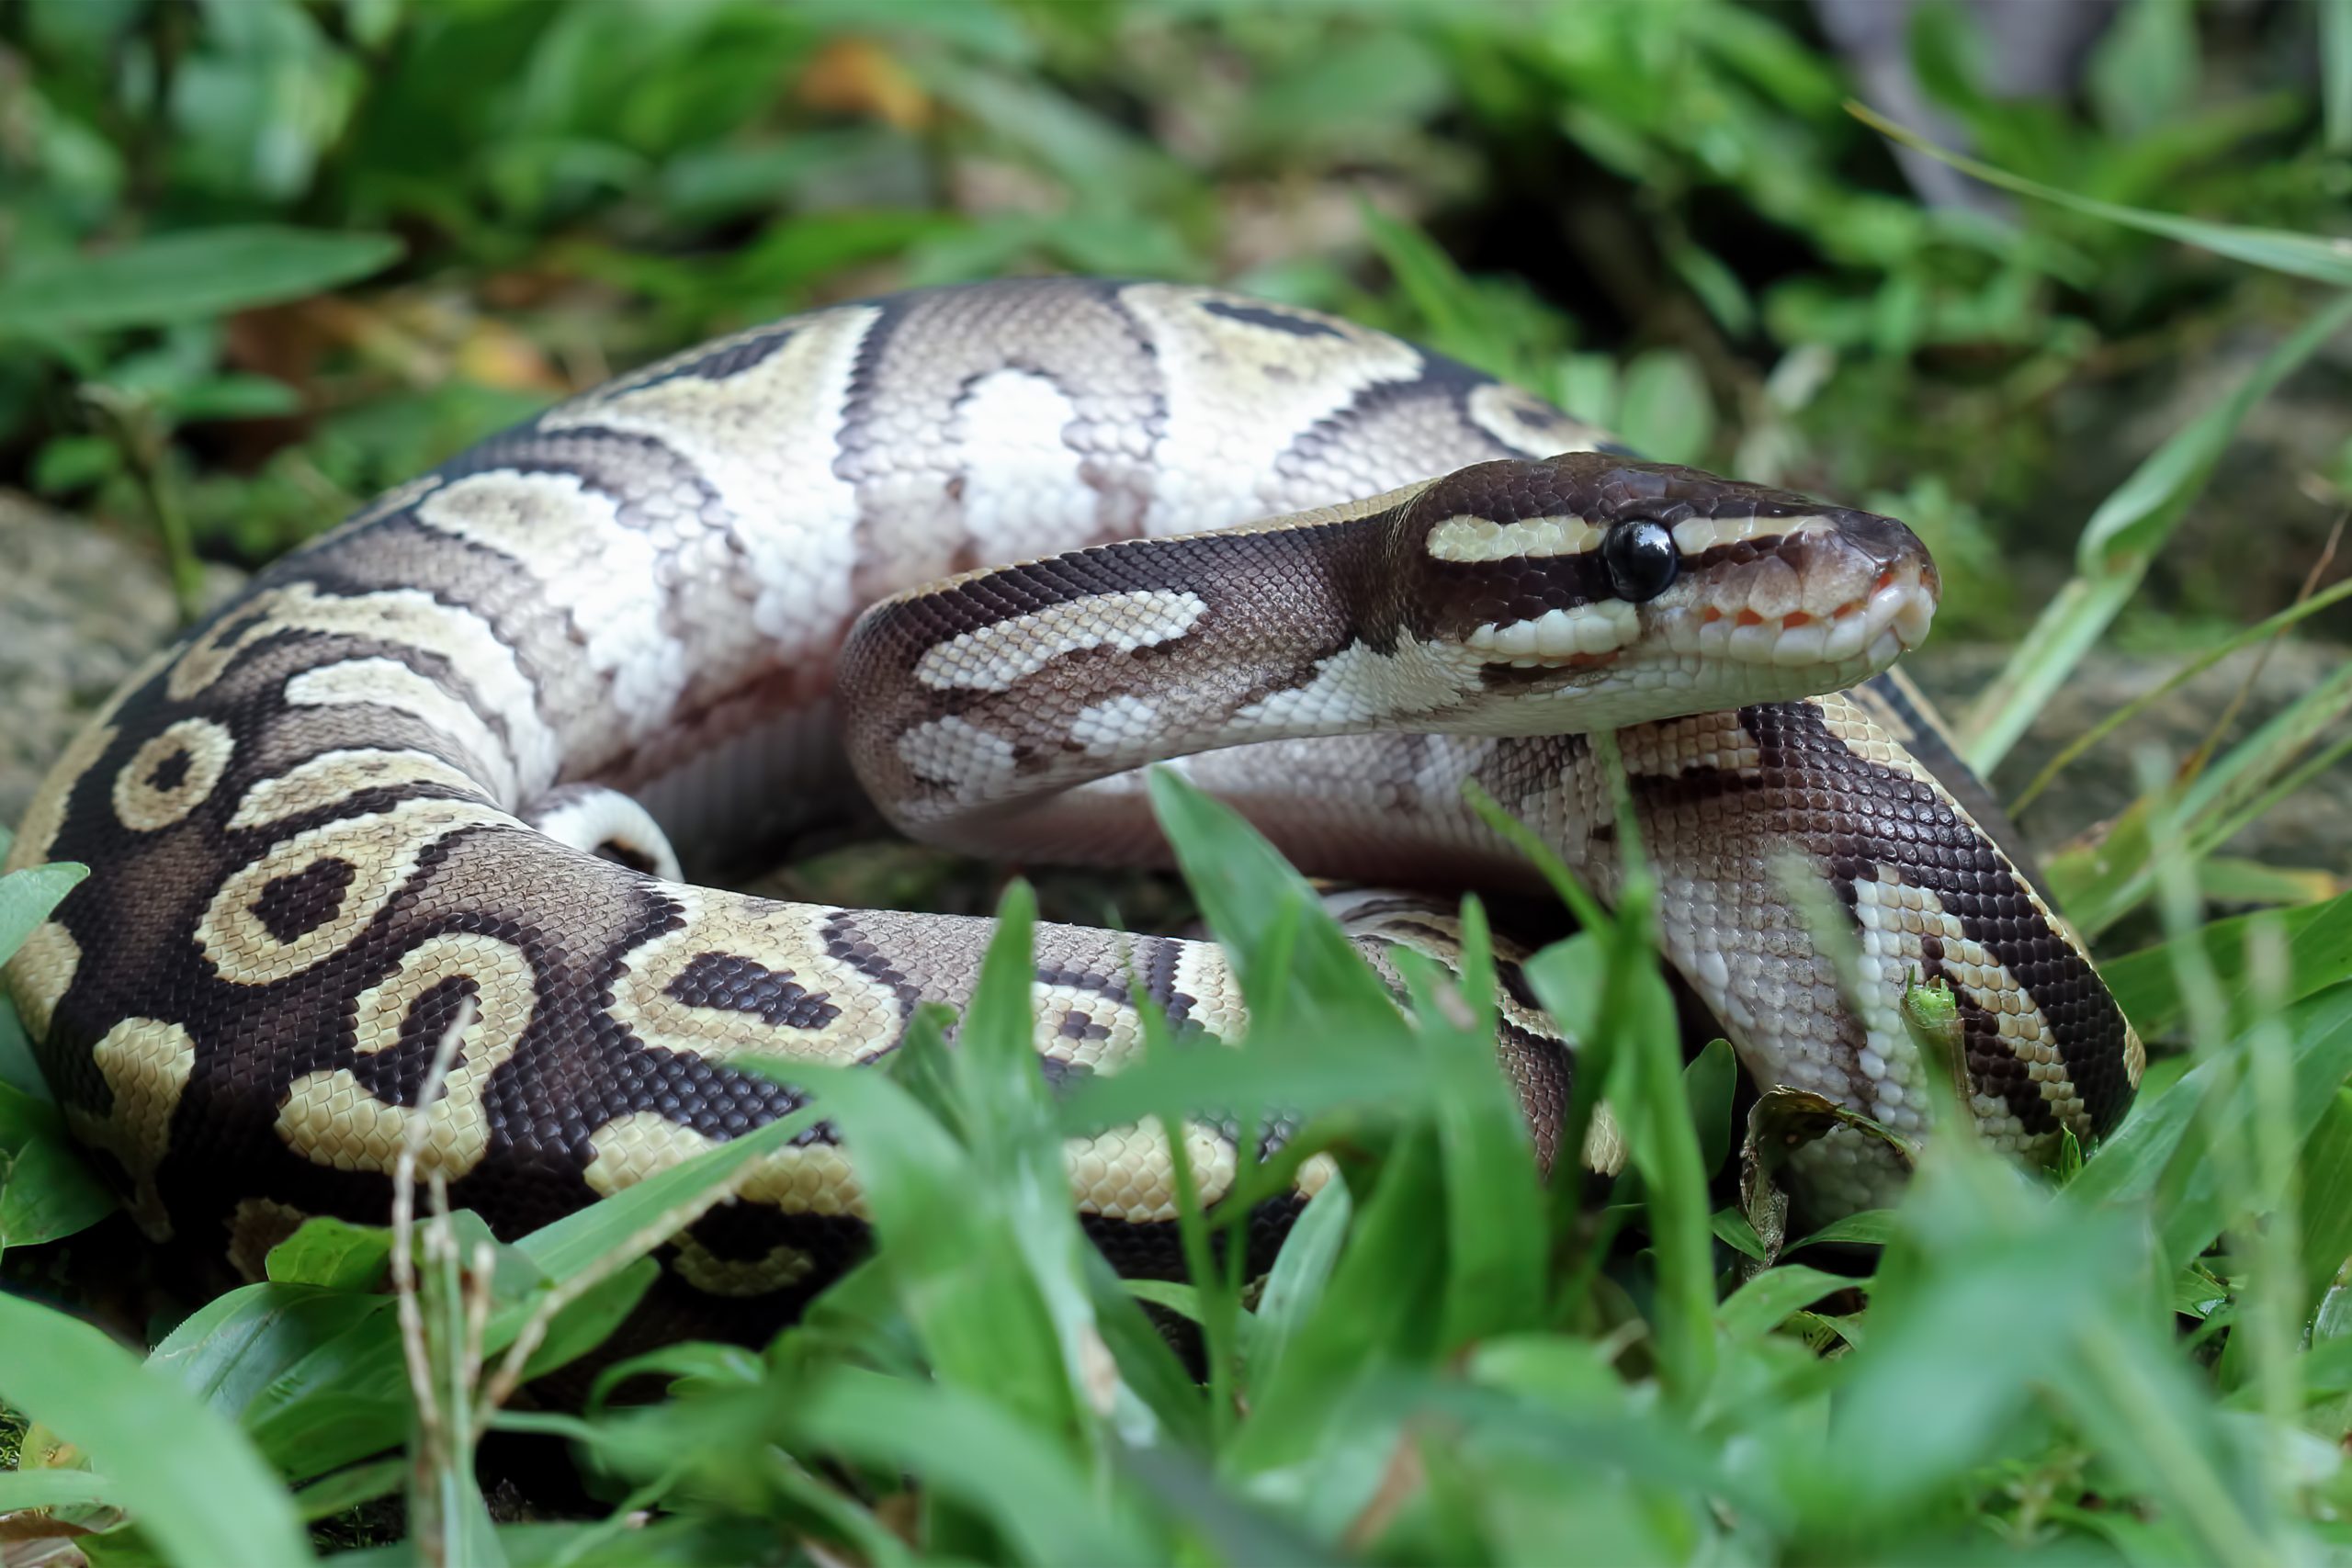 Do ball pythons have venom?